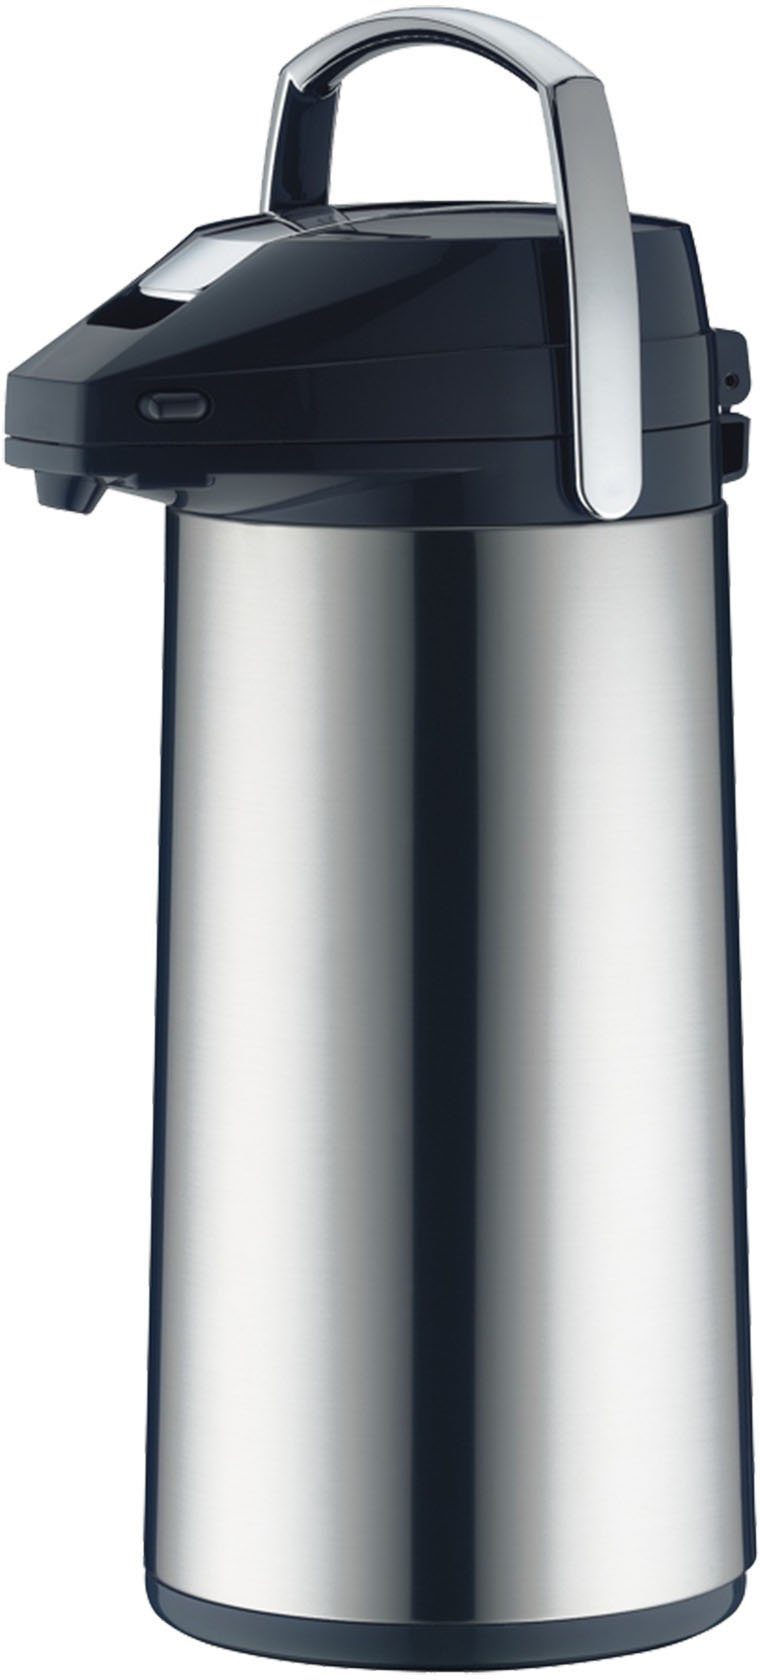 Alfi Pump-Isolierkanne, 2,2 l, Edelstahl, mit Glaseinsatz, Hält 12 Stunden  heiß oder 24 Stunden kalt | Isolierkannen